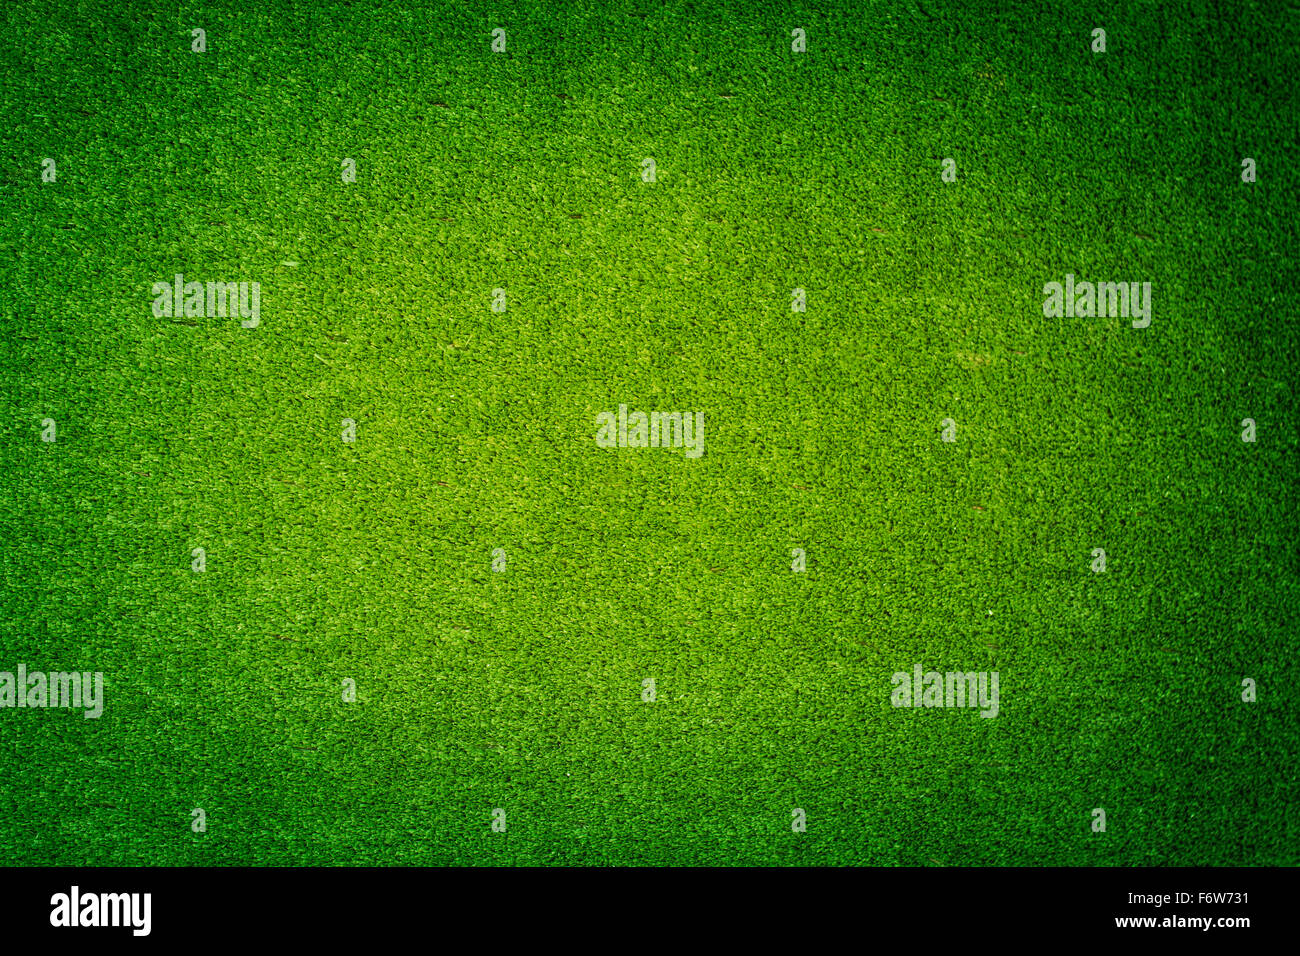 Grünen Rasen Boden Hintergrund Stockfoto